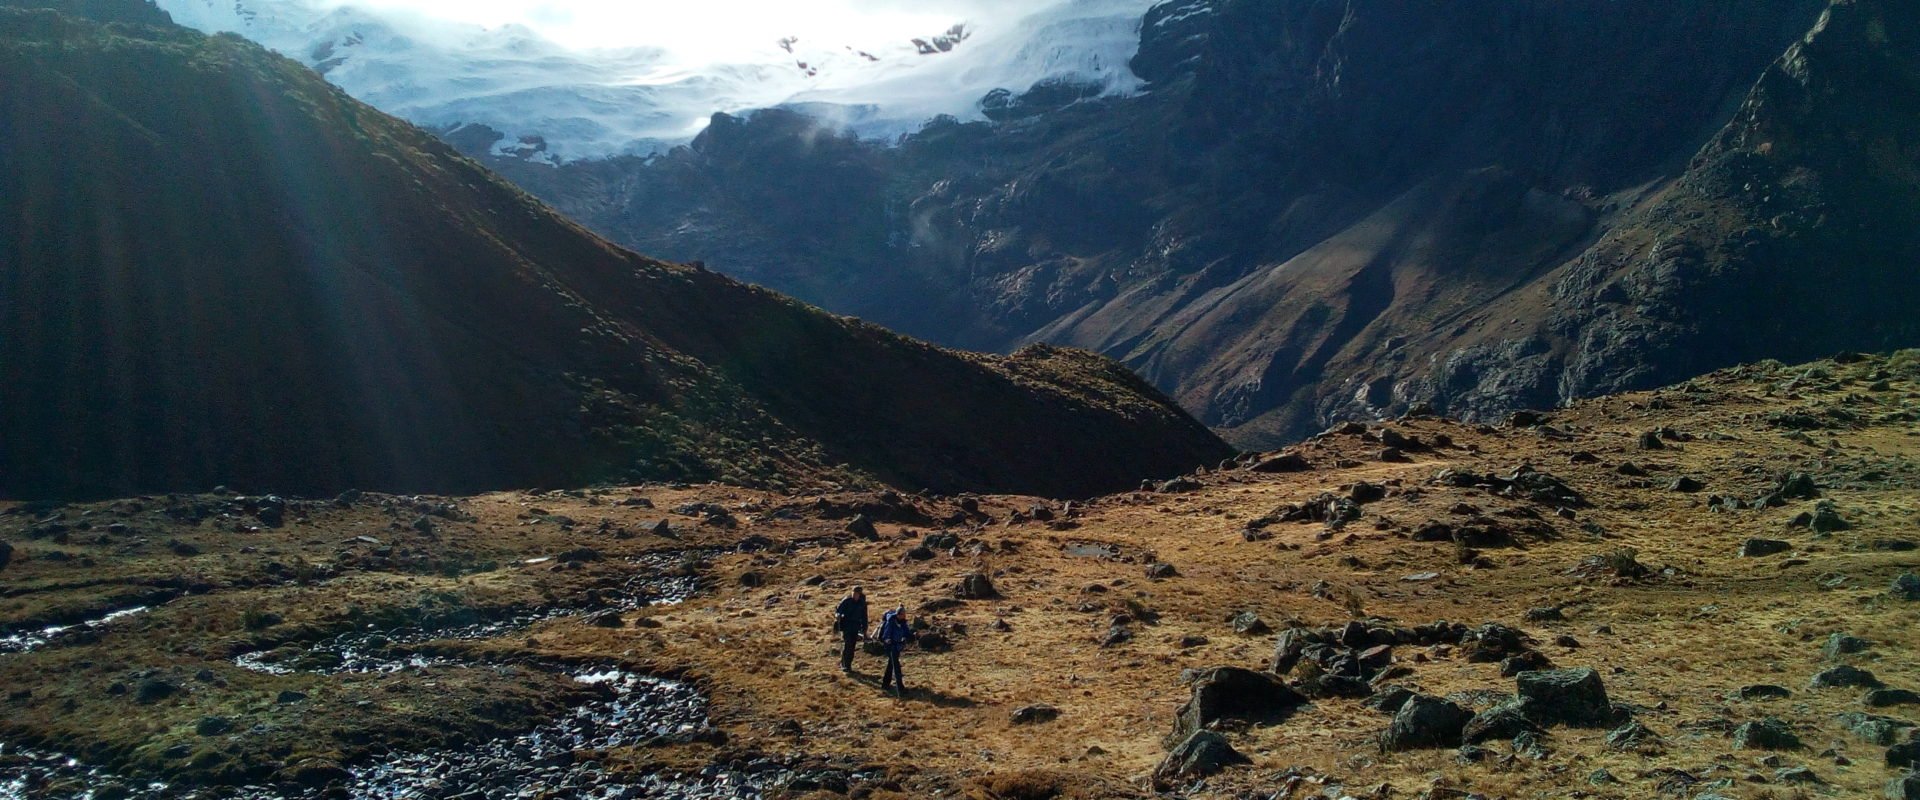 Trek dans la Cordillère des Andes au Pérou - Paysage